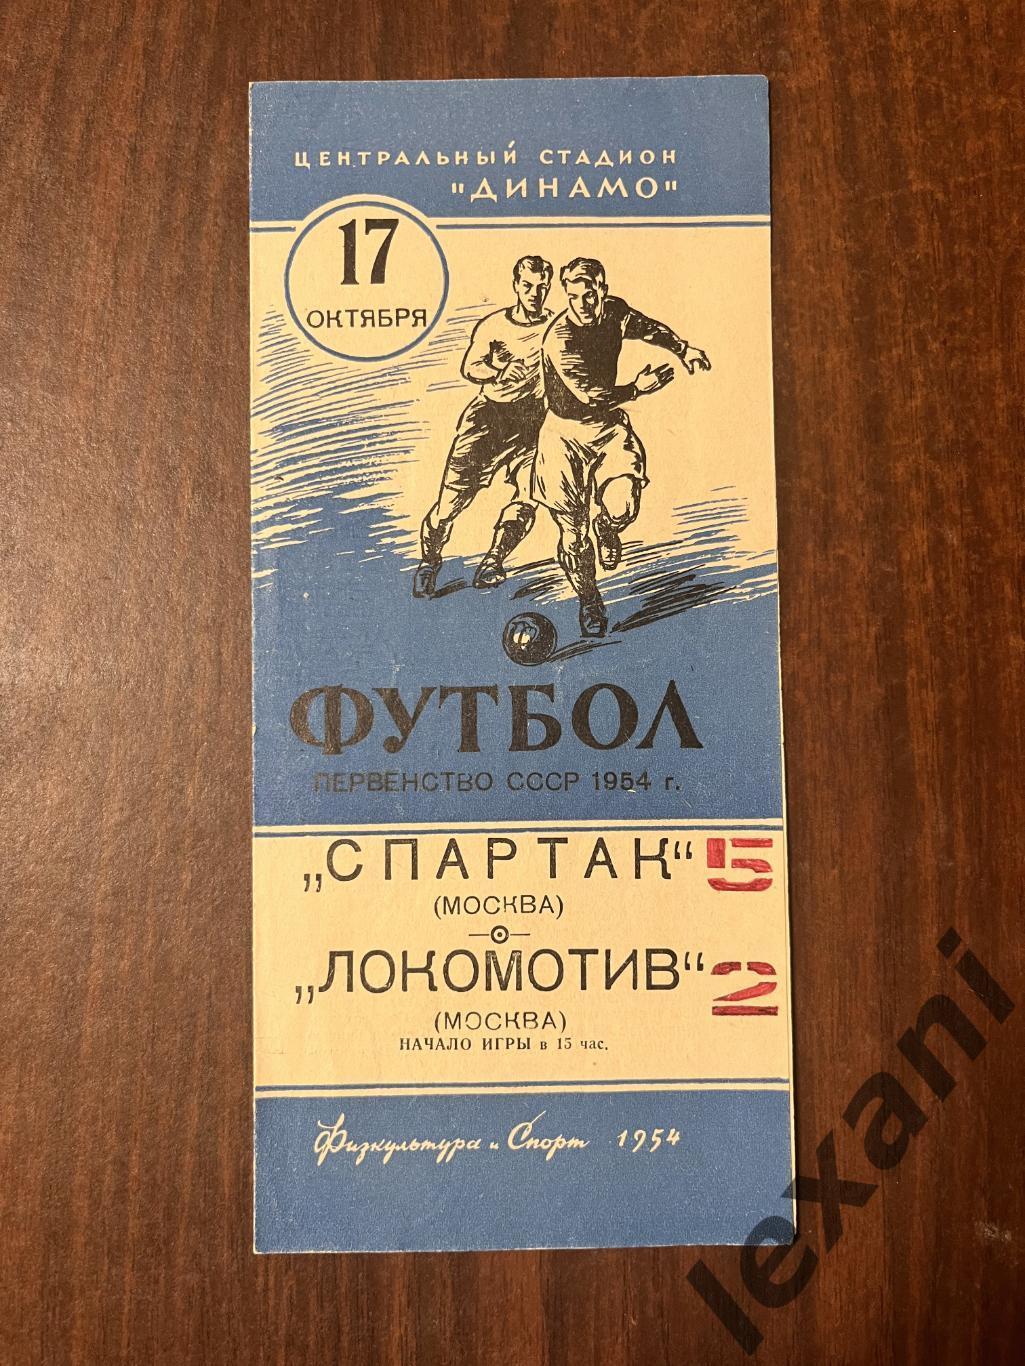 Спартак Москва - Локомотив Москва 17 октября 1954